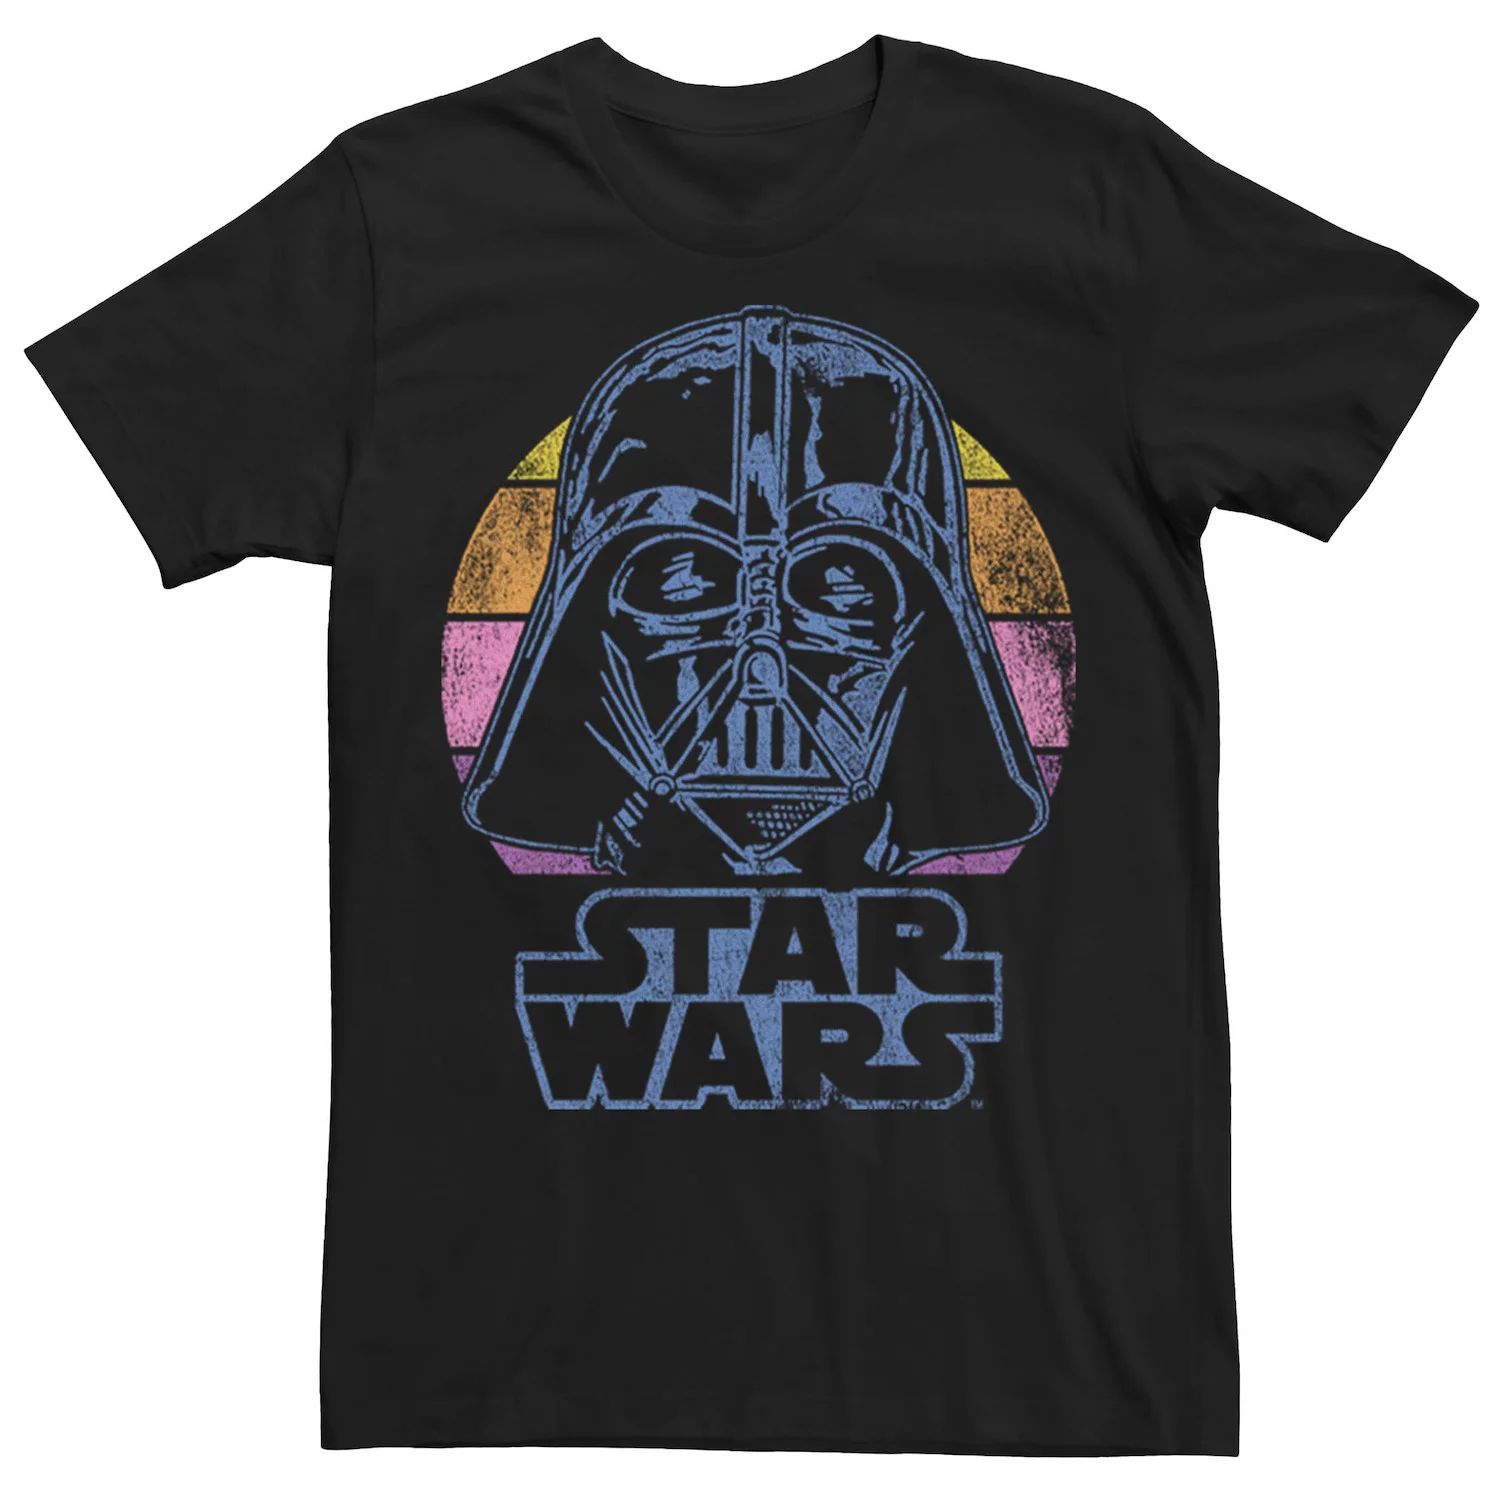 Мужская темная футболка с портретом Вейдера Star Wars